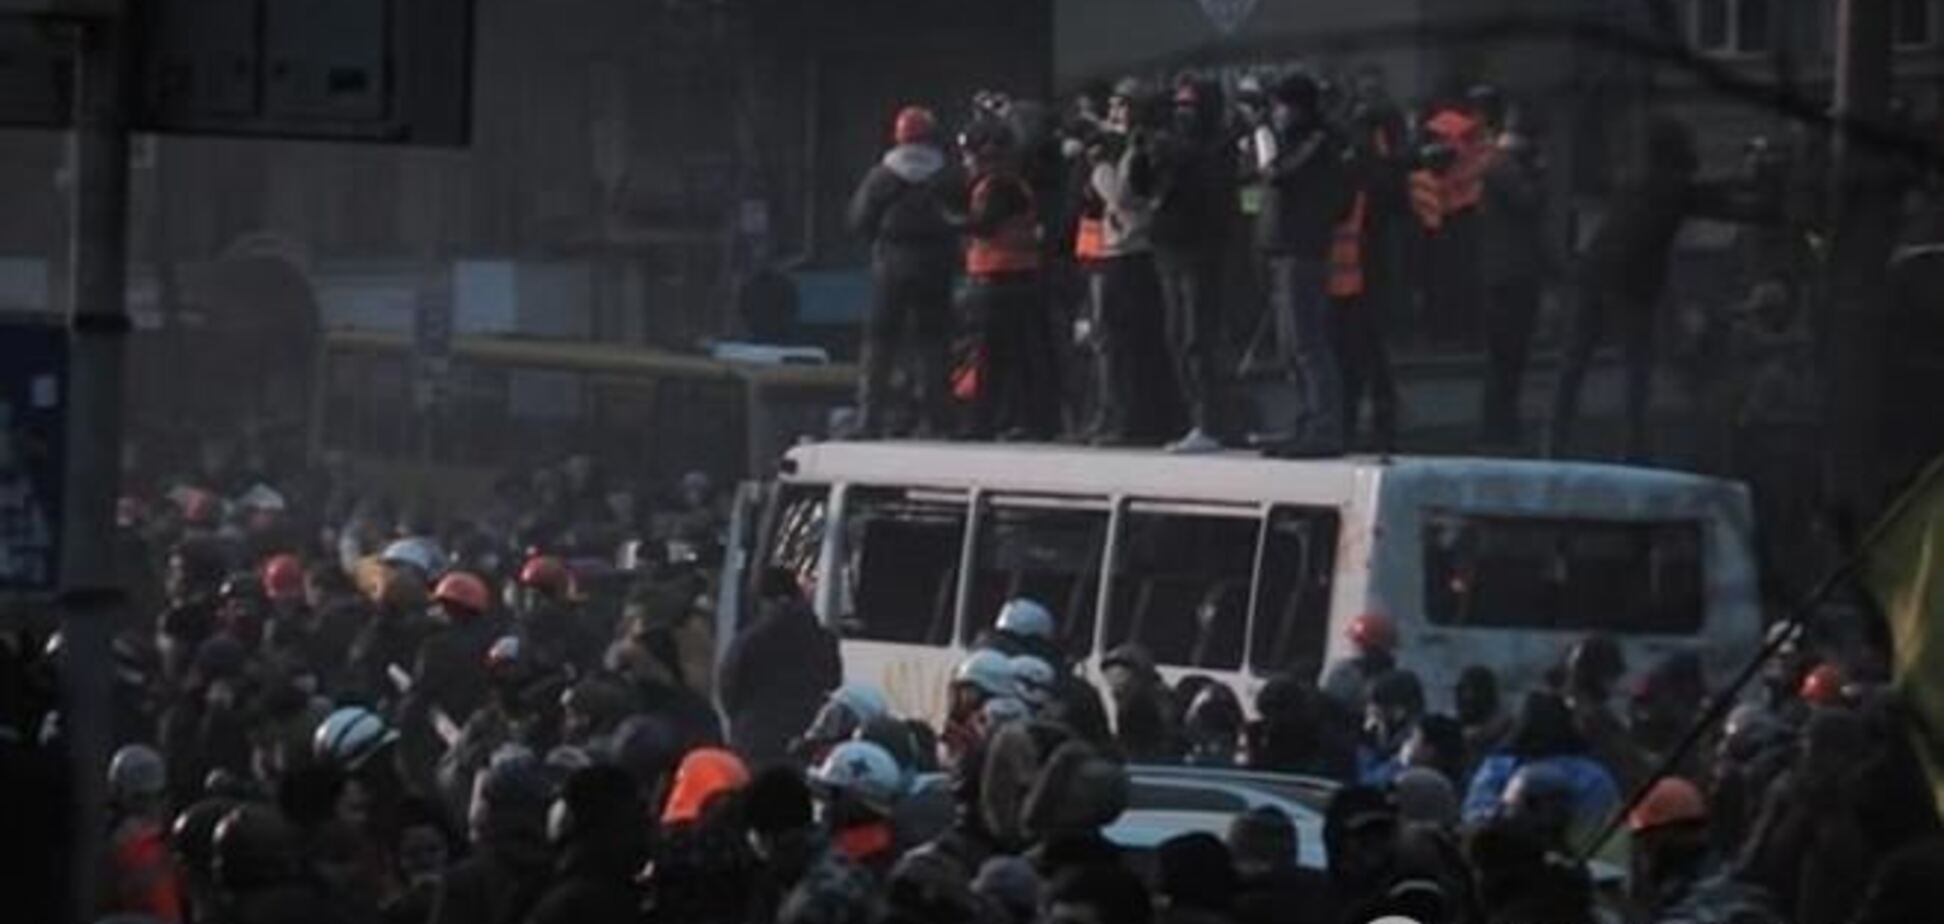 Вже 31 чоловік затриманий через масові заворушення в центрі Києва, - МВС